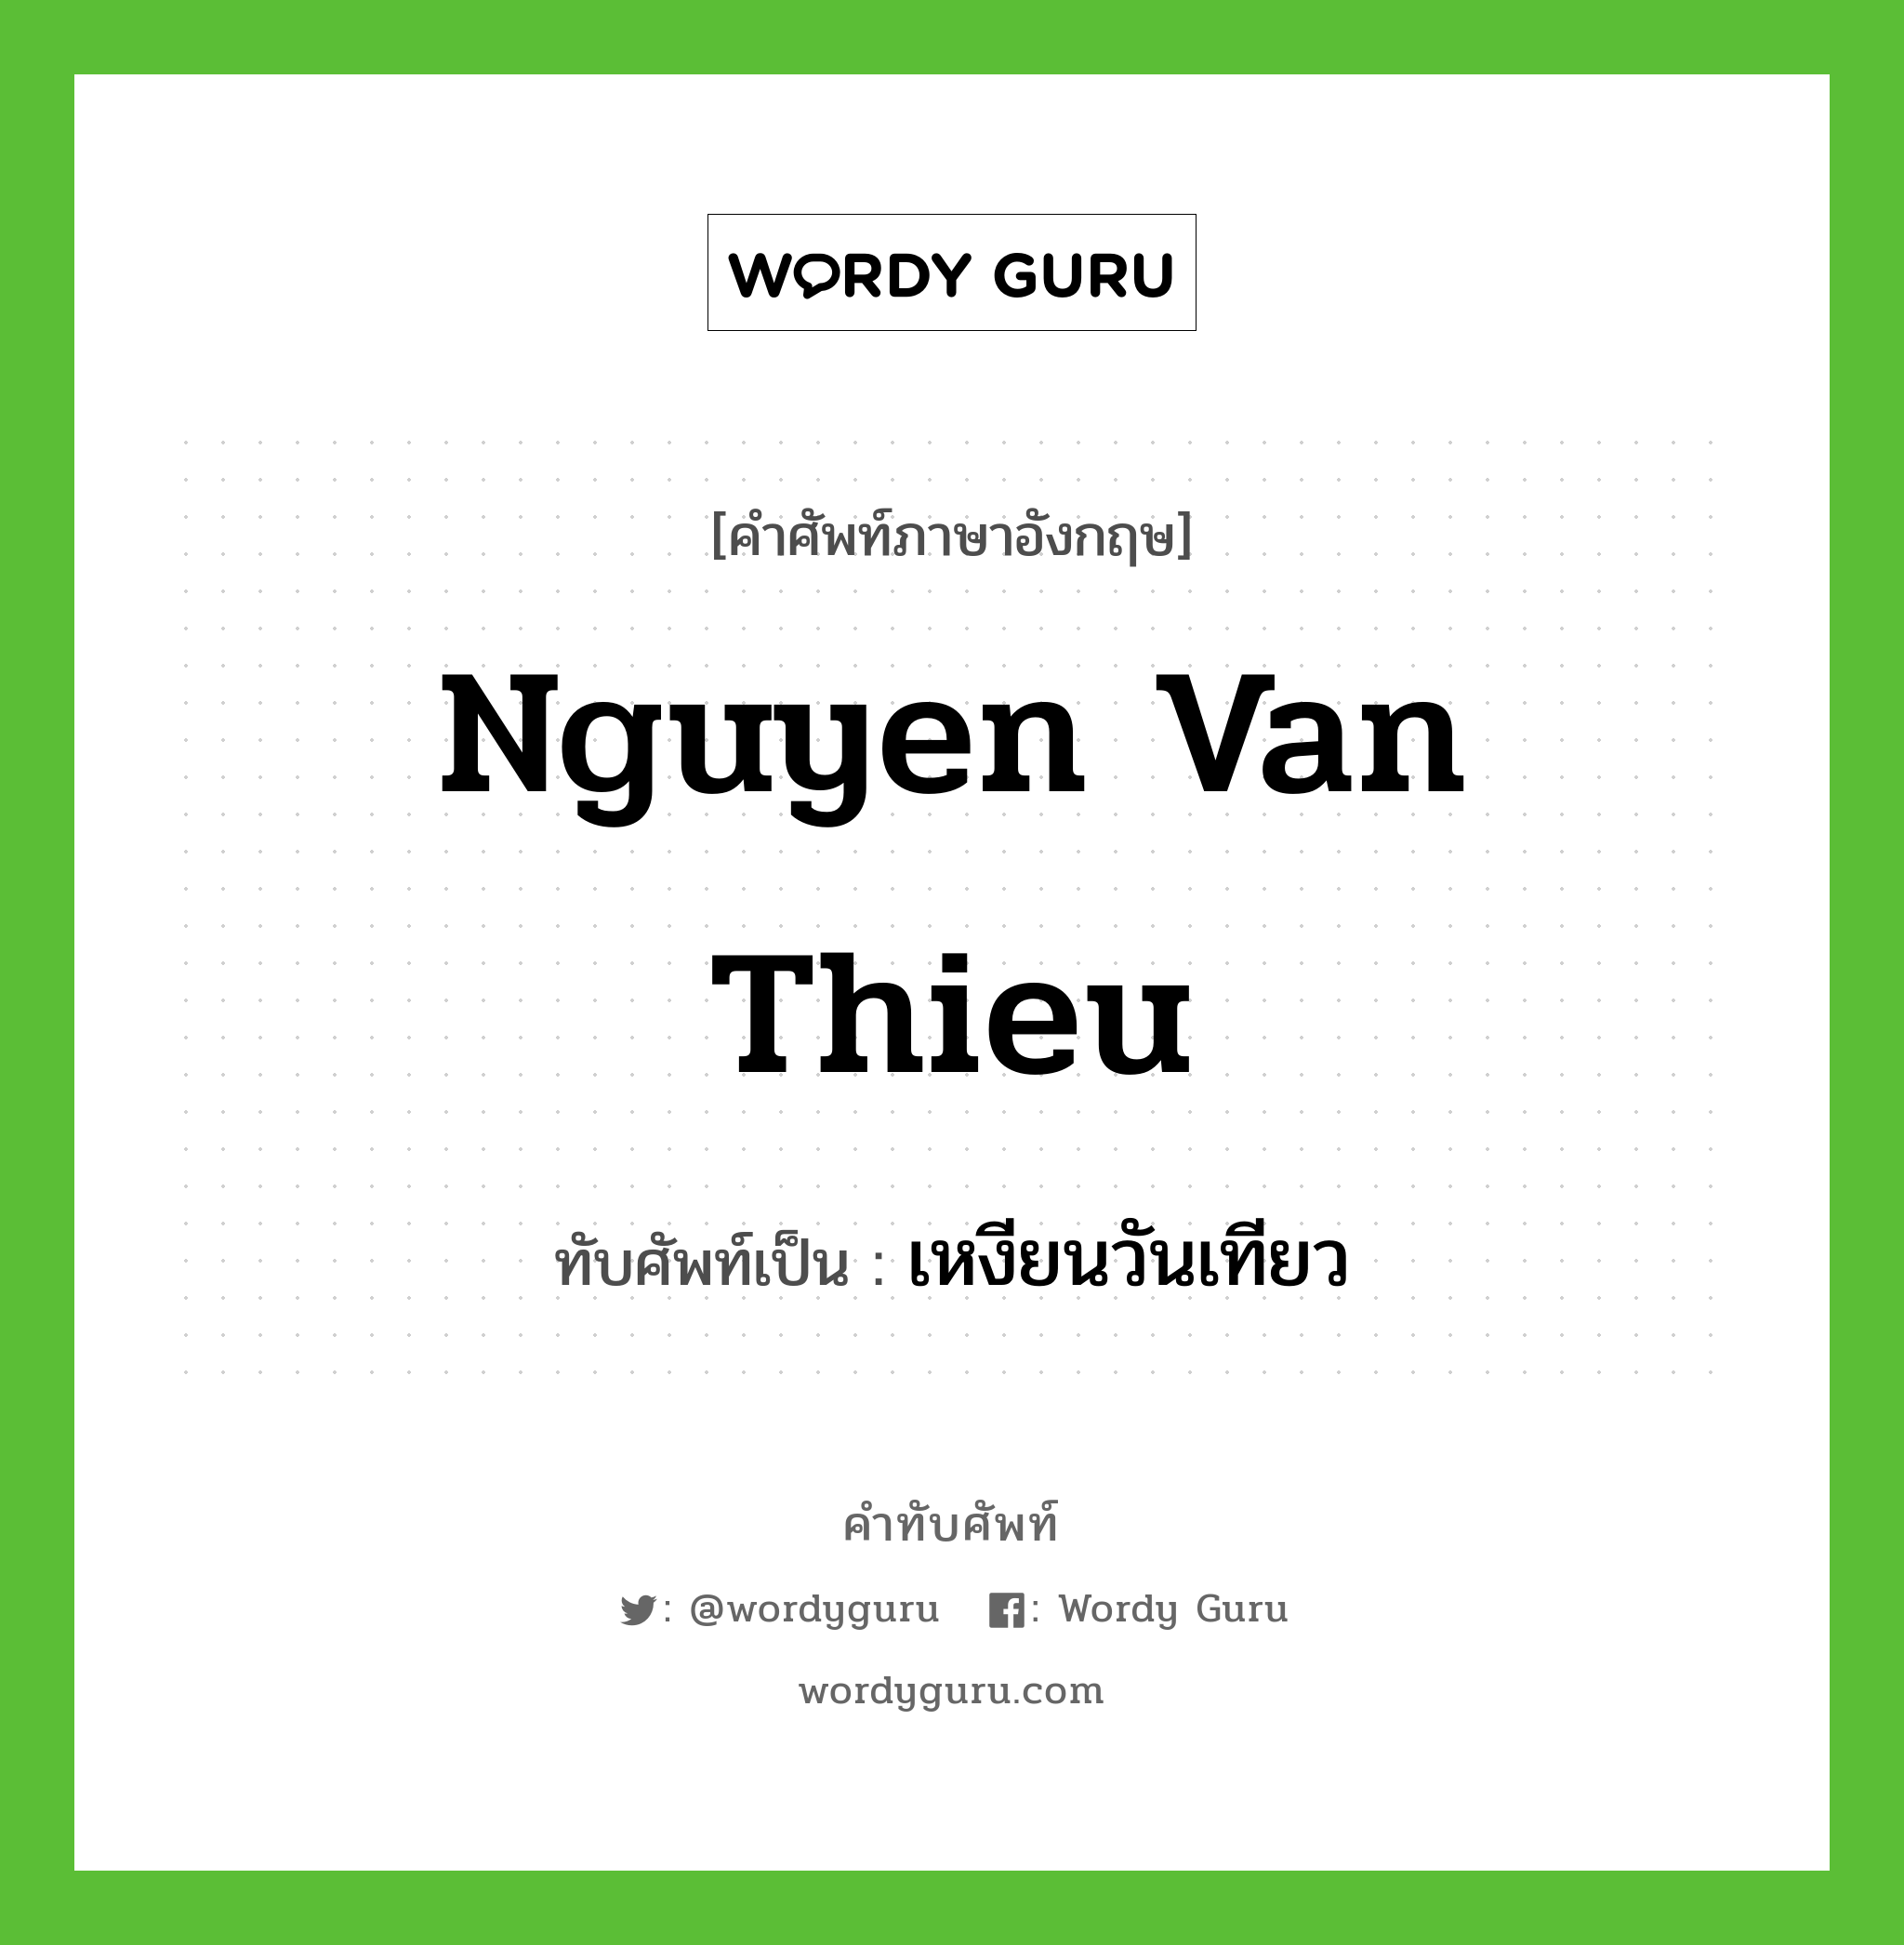 Nguyen Van Thieu เขียนเป็นคำไทยว่าอะไร?, คำศัพท์ภาษาอังกฤษ Nguyen Van Thieu ทับศัพท์เป็น เหงียนวันเทียว